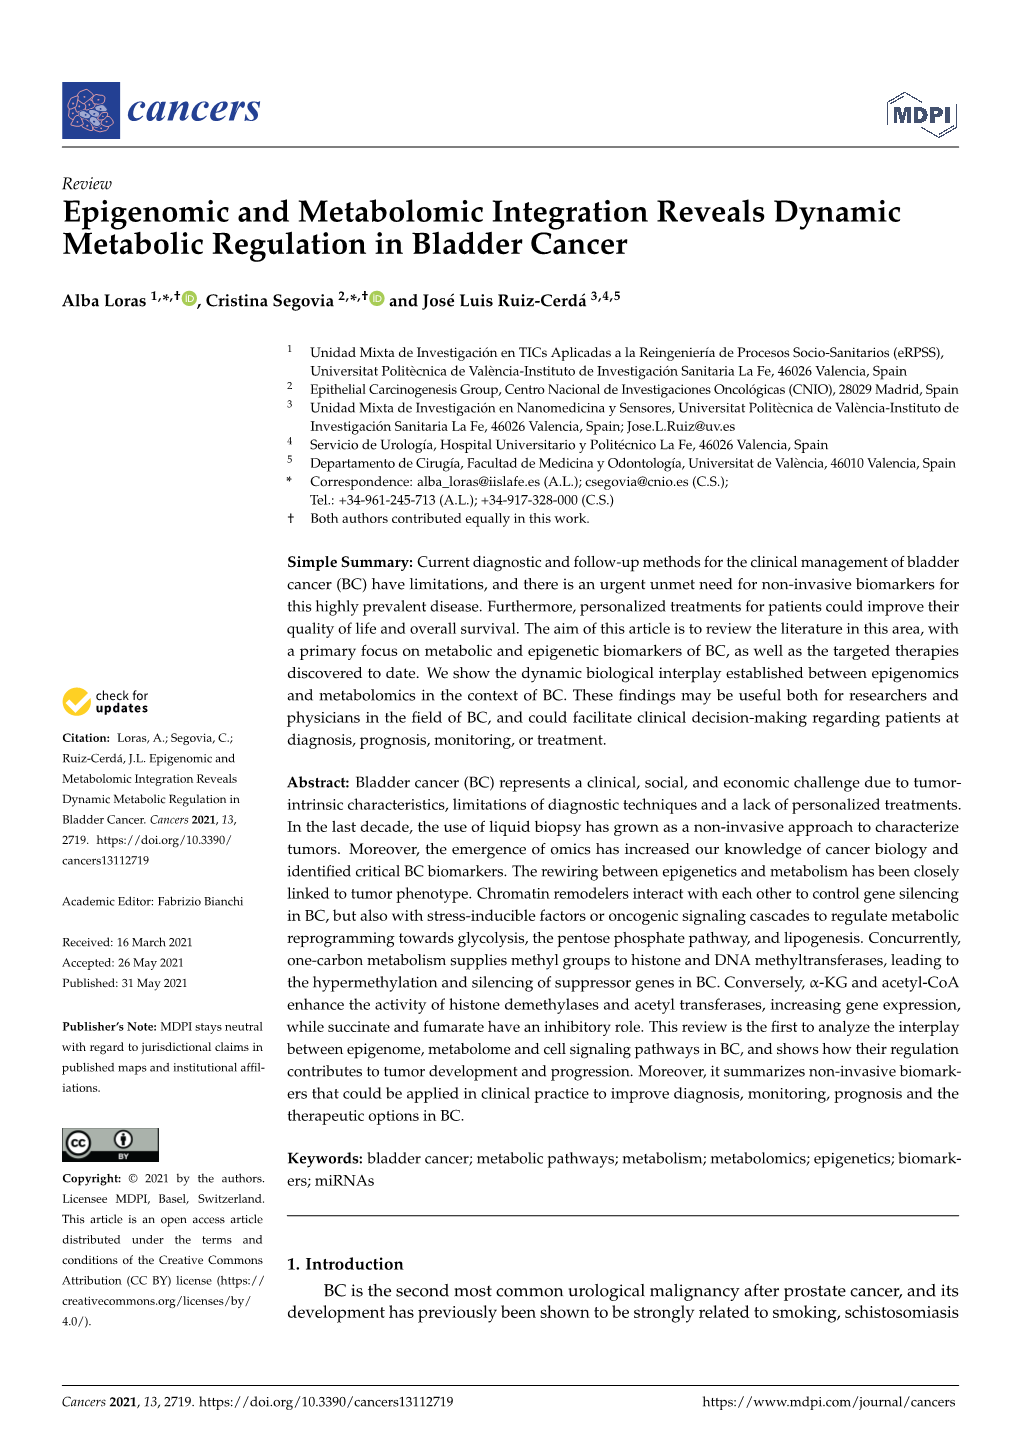 Epigenomic and Metabolomic Integration Reveals Dynamic Metabolic Regulation in Bladder Cancer